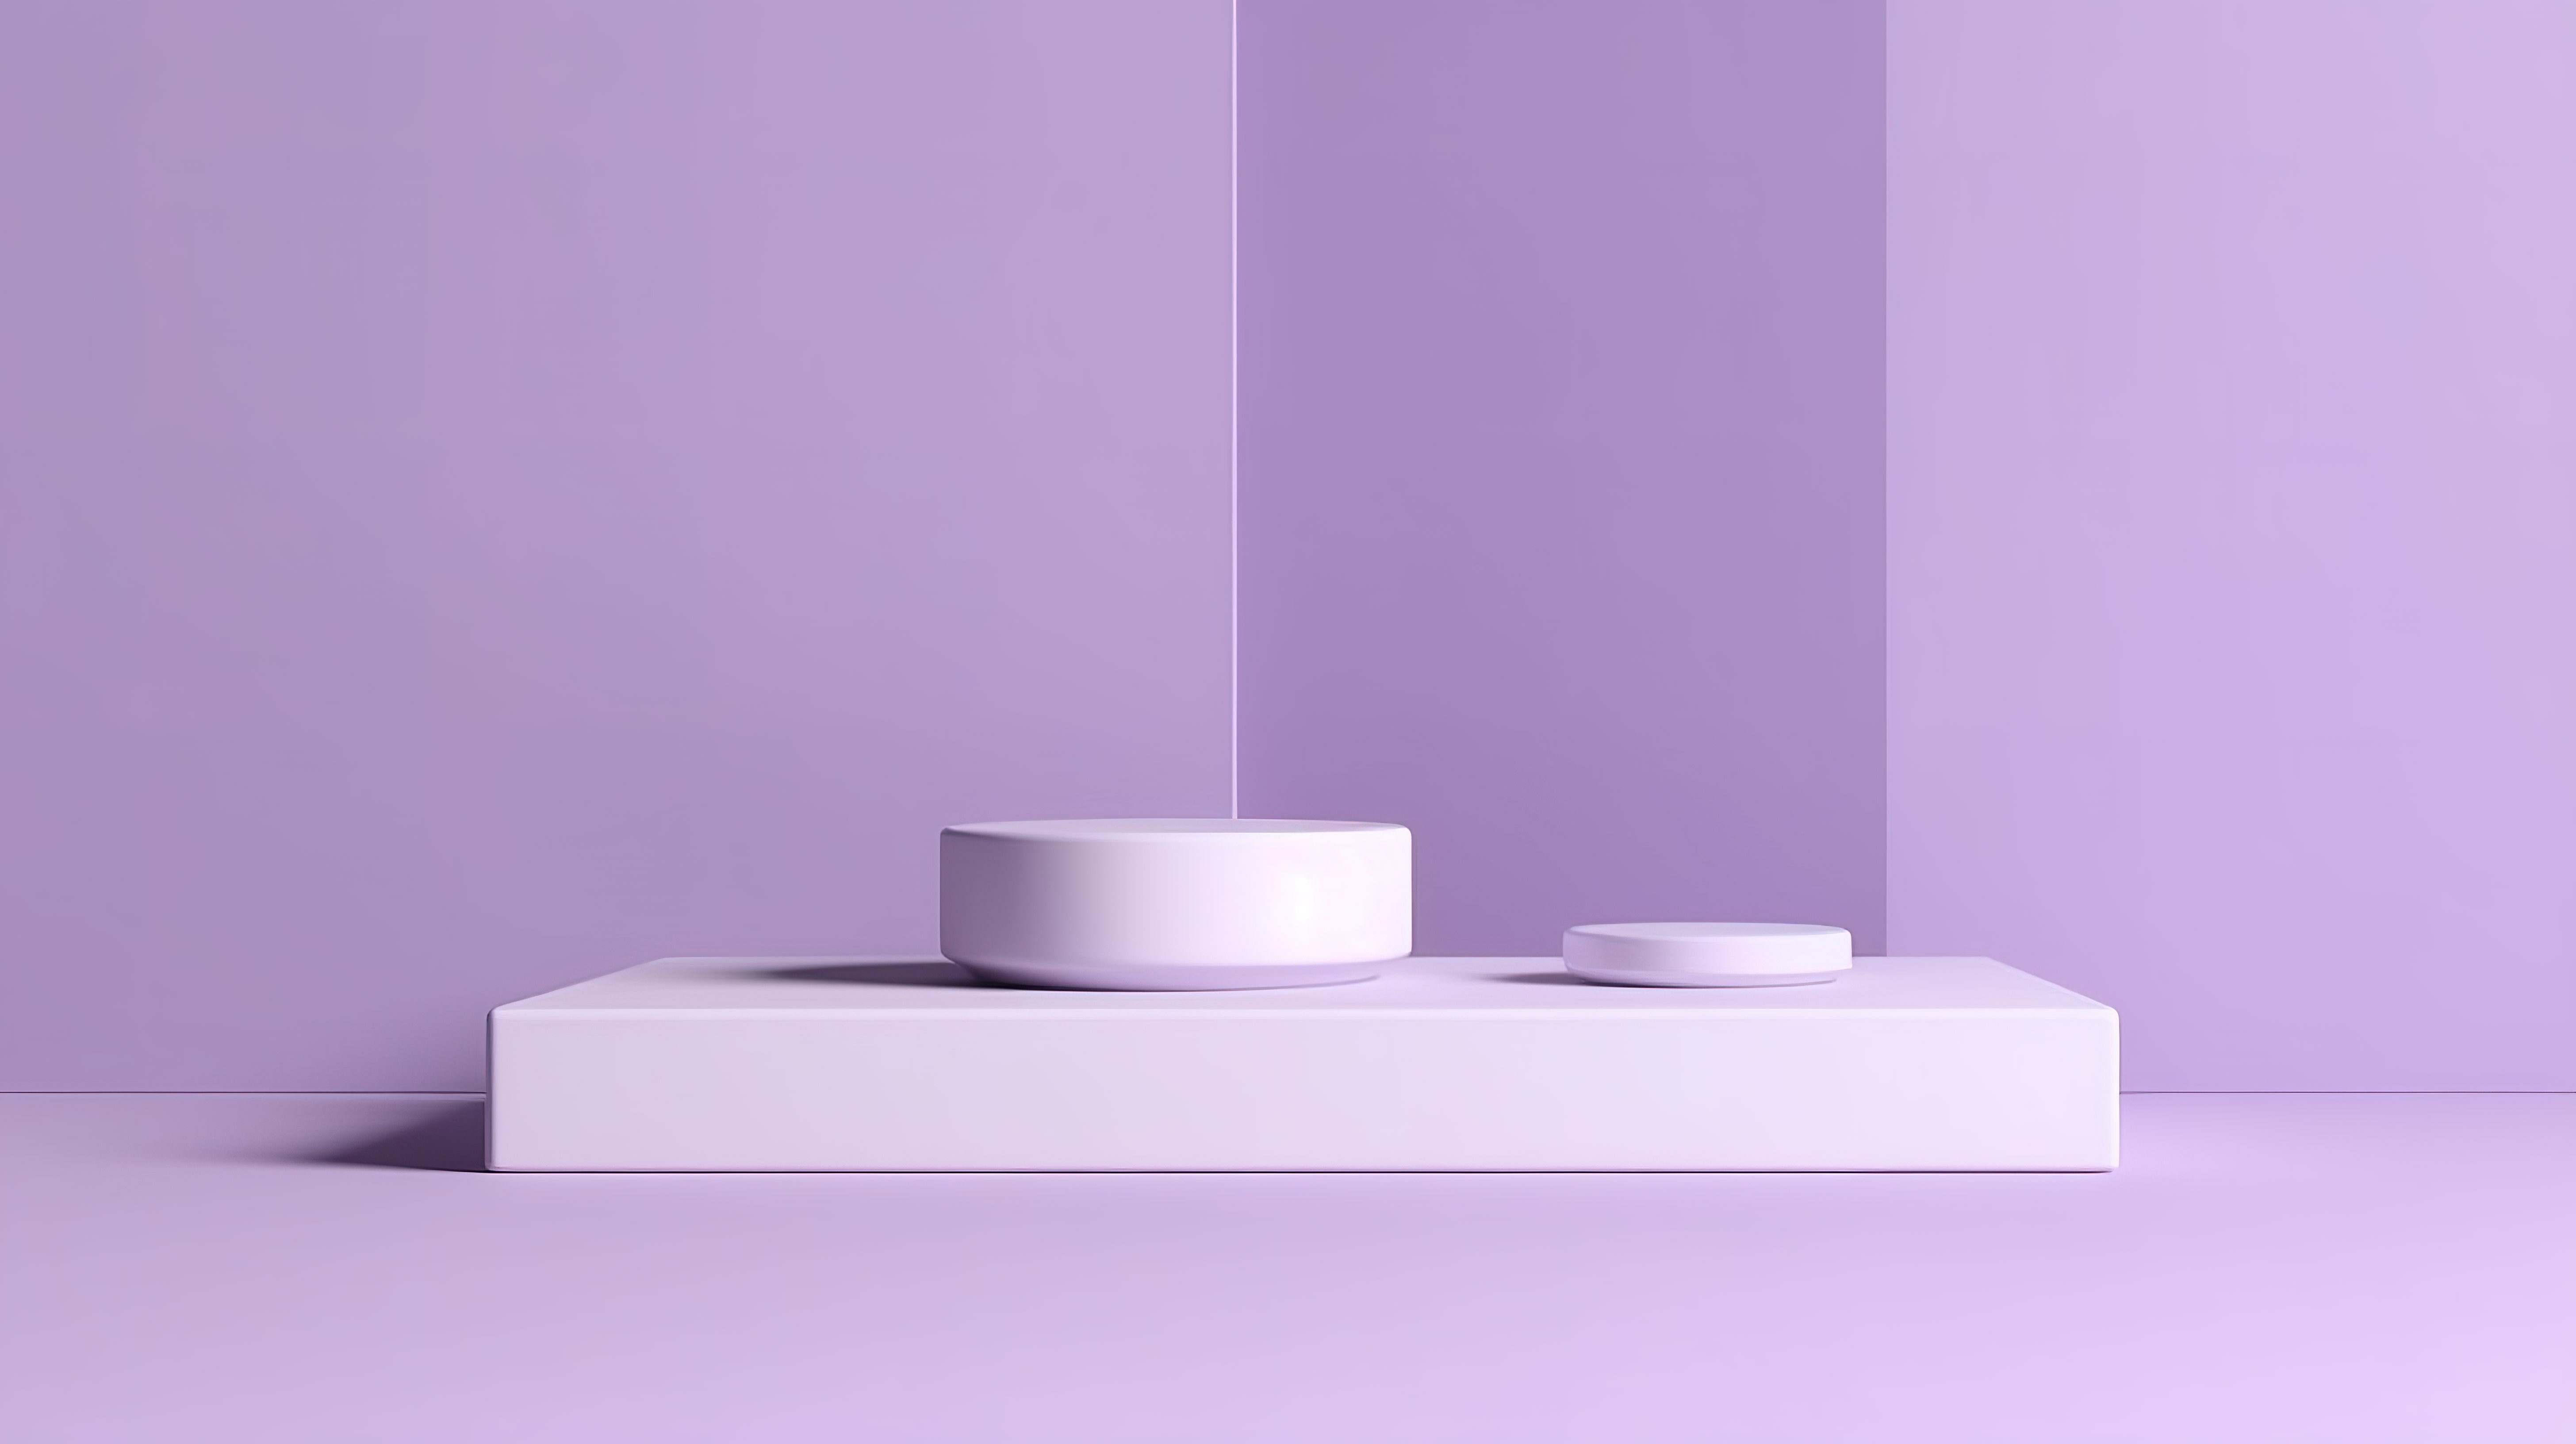 简约的模型场景，具有三个优雅的紫色平台，用于 3D 品牌产品展示图片